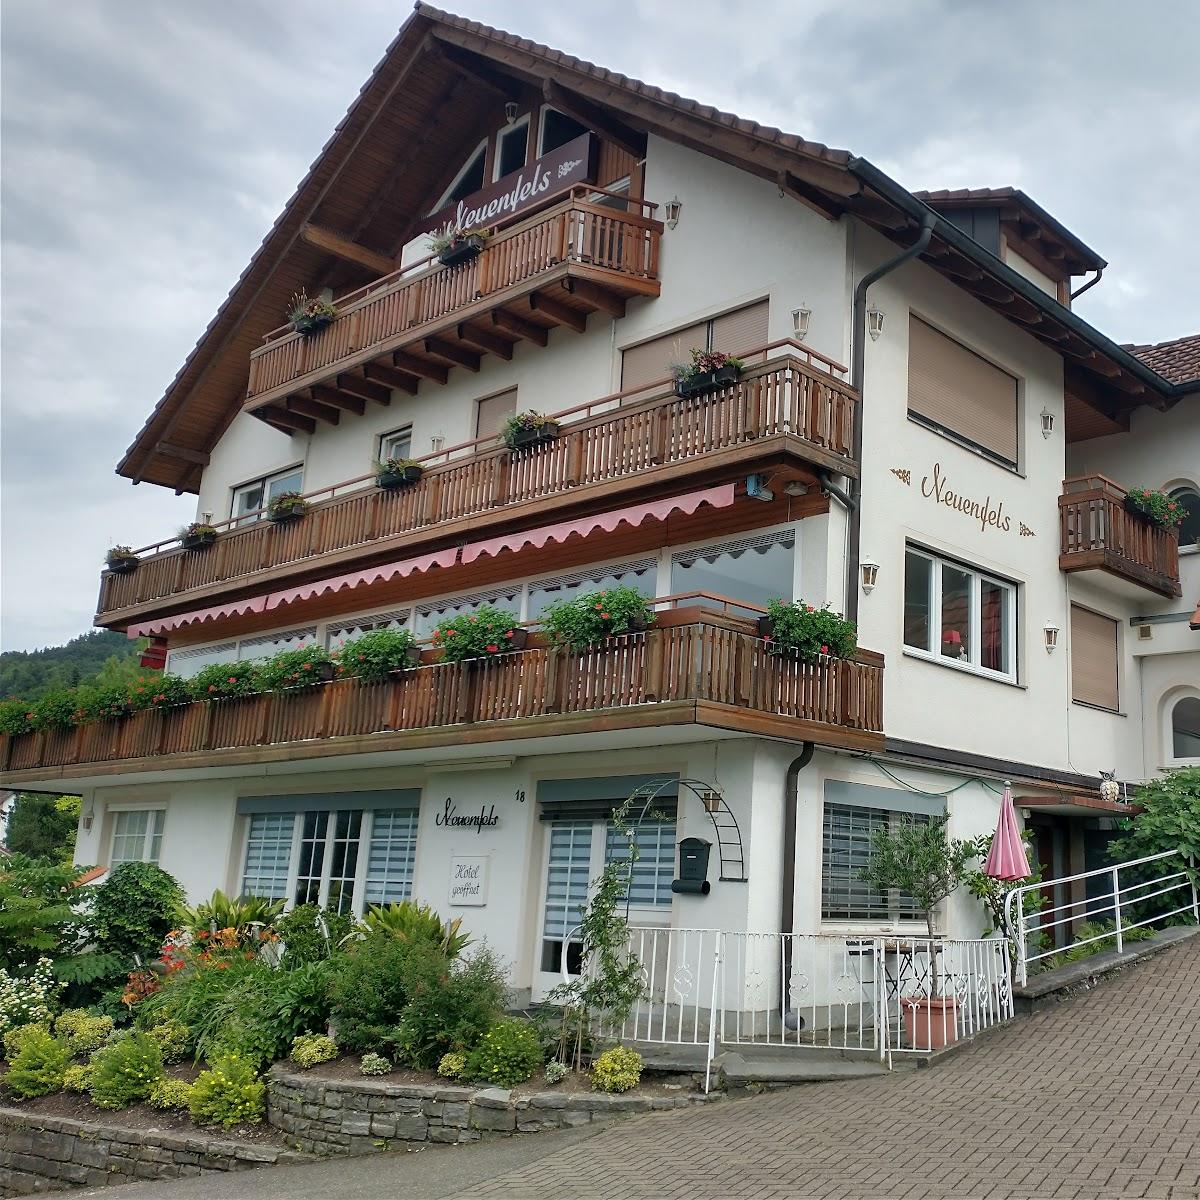 Restaurant "Hotel Neuenfels" in Badenweiler